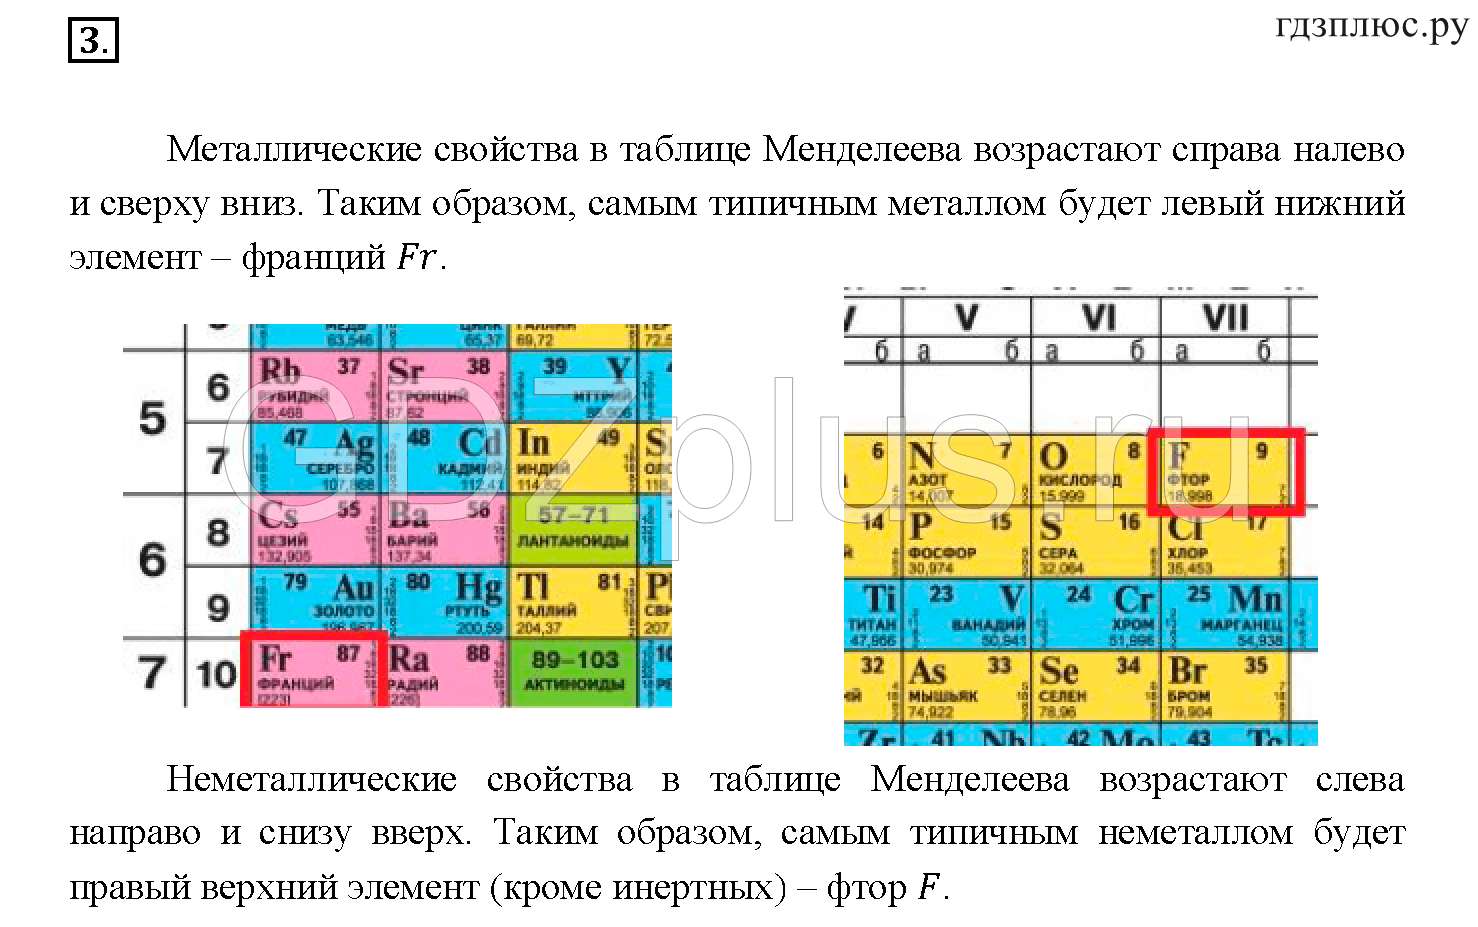 Металлические свойства натрия сильнее чем. Усиление основных свойств в таблице Менделеева. Таблица металлических свойств химических элементов. Порядок металлических свойств элементов. Металлические свойства элементов таблица.